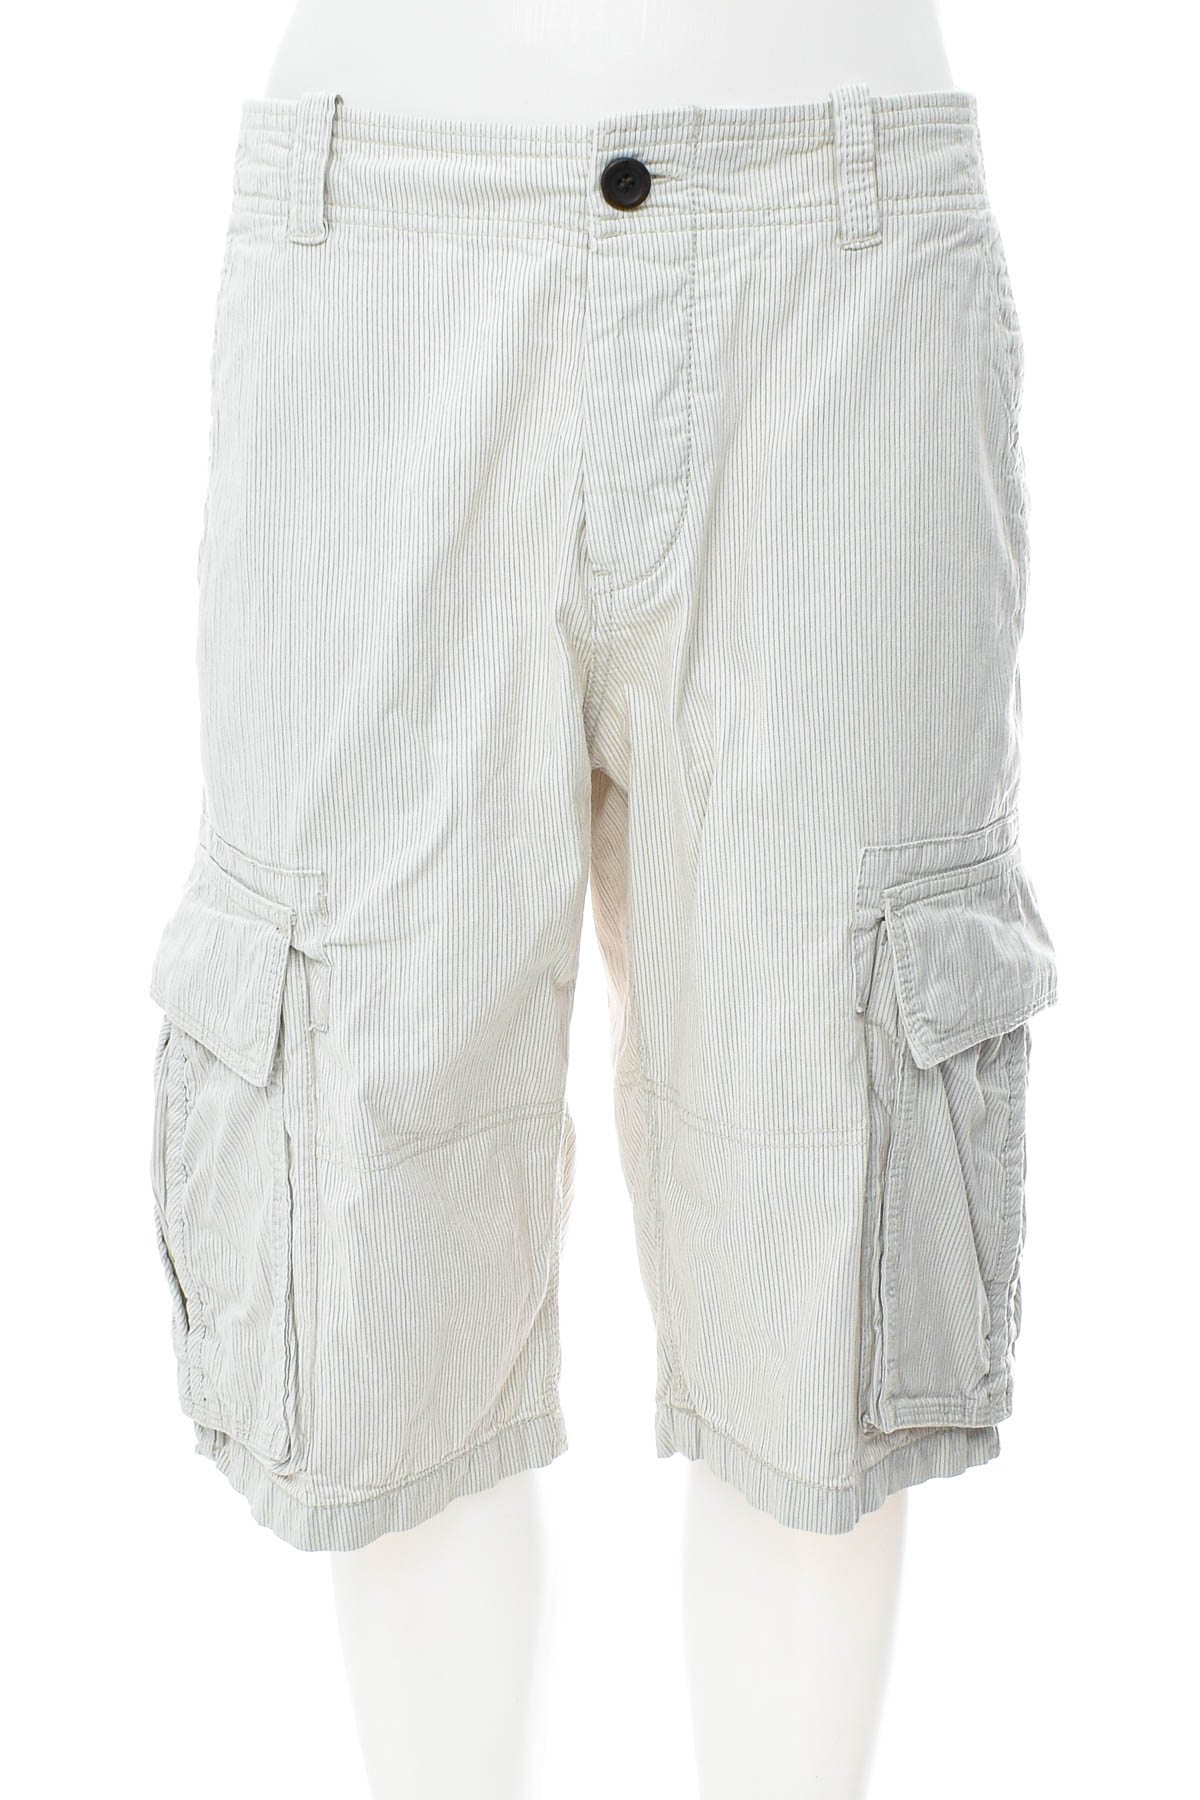 Pantaloni scurți bărbați - L.O.G.G. by H&M - 0